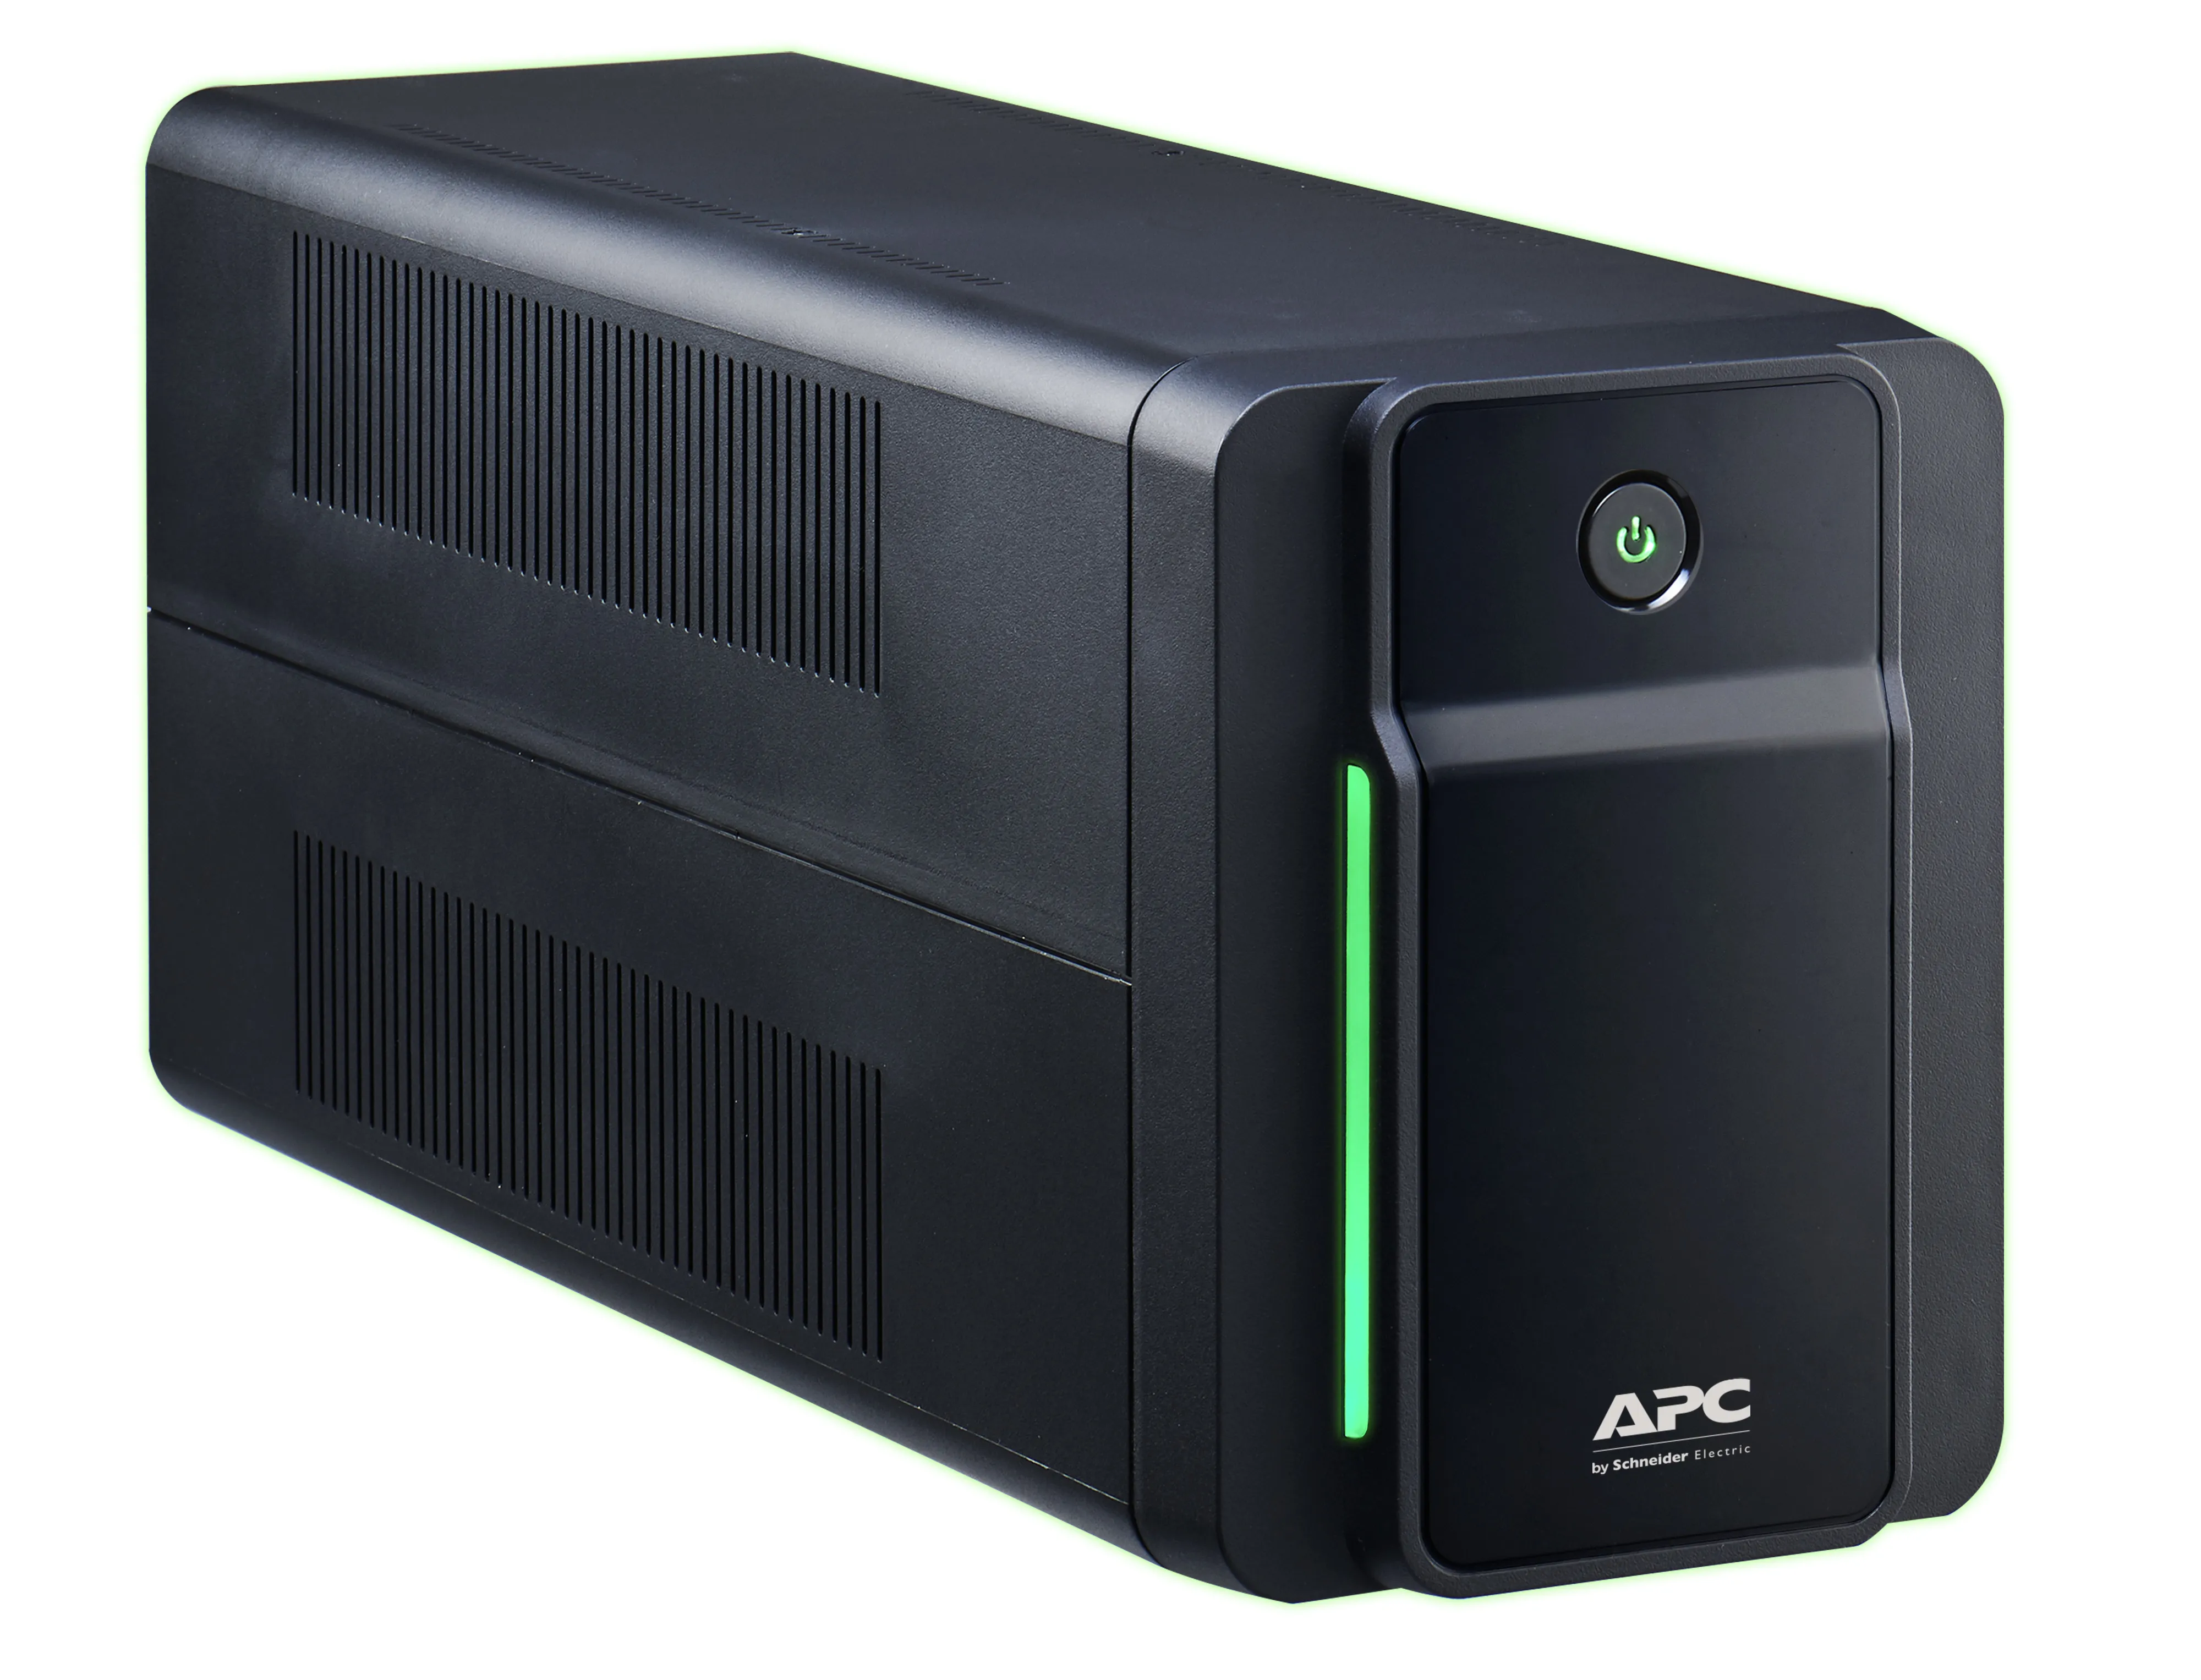 Vente APC Back-UPS 750VA 230V IEC APC au meilleur prix - visuel 8